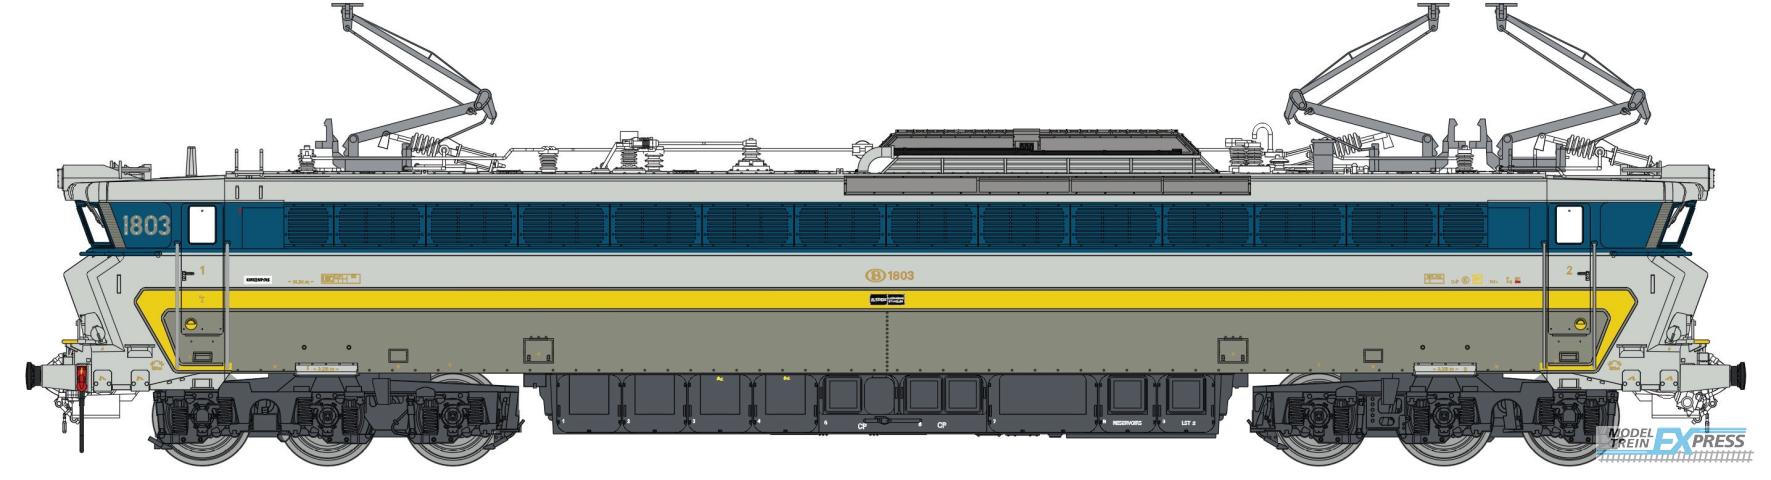 LS Models 12050 1803, grijs/inox, gele en licht blauwe band, nieuwe kolpampen, inox hoeken  /  Ep. IVB  /  SNCB  /  HO  /  DC  /  1 P.